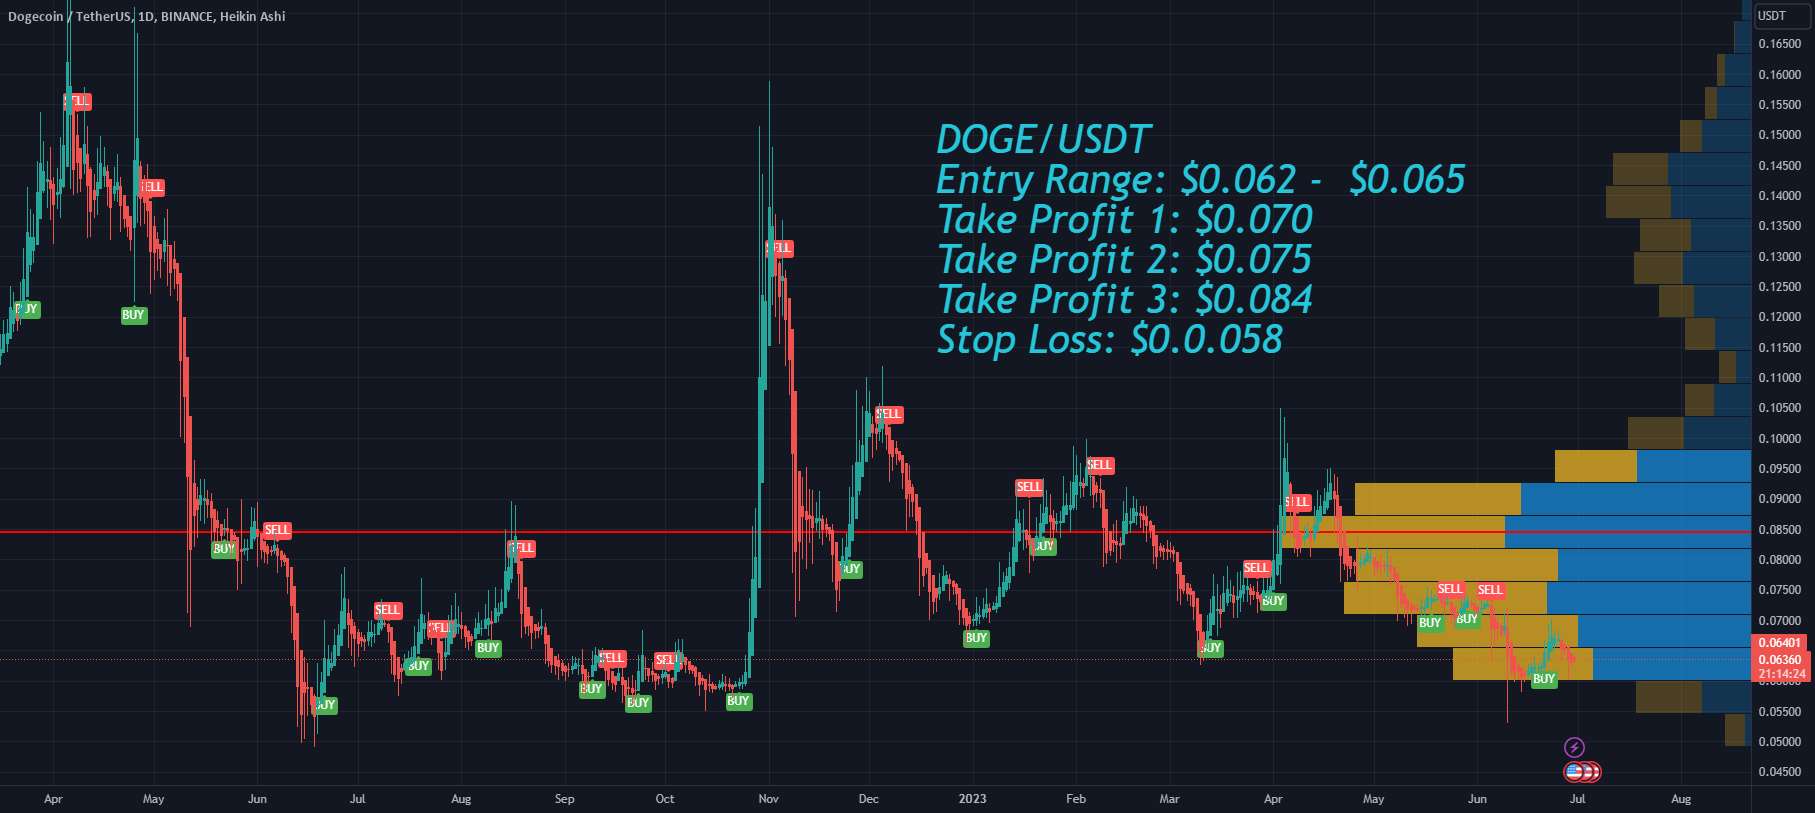 افزایش احتمالی Dogecoin DOGE با بازار سهام + تحلیل قیمت 